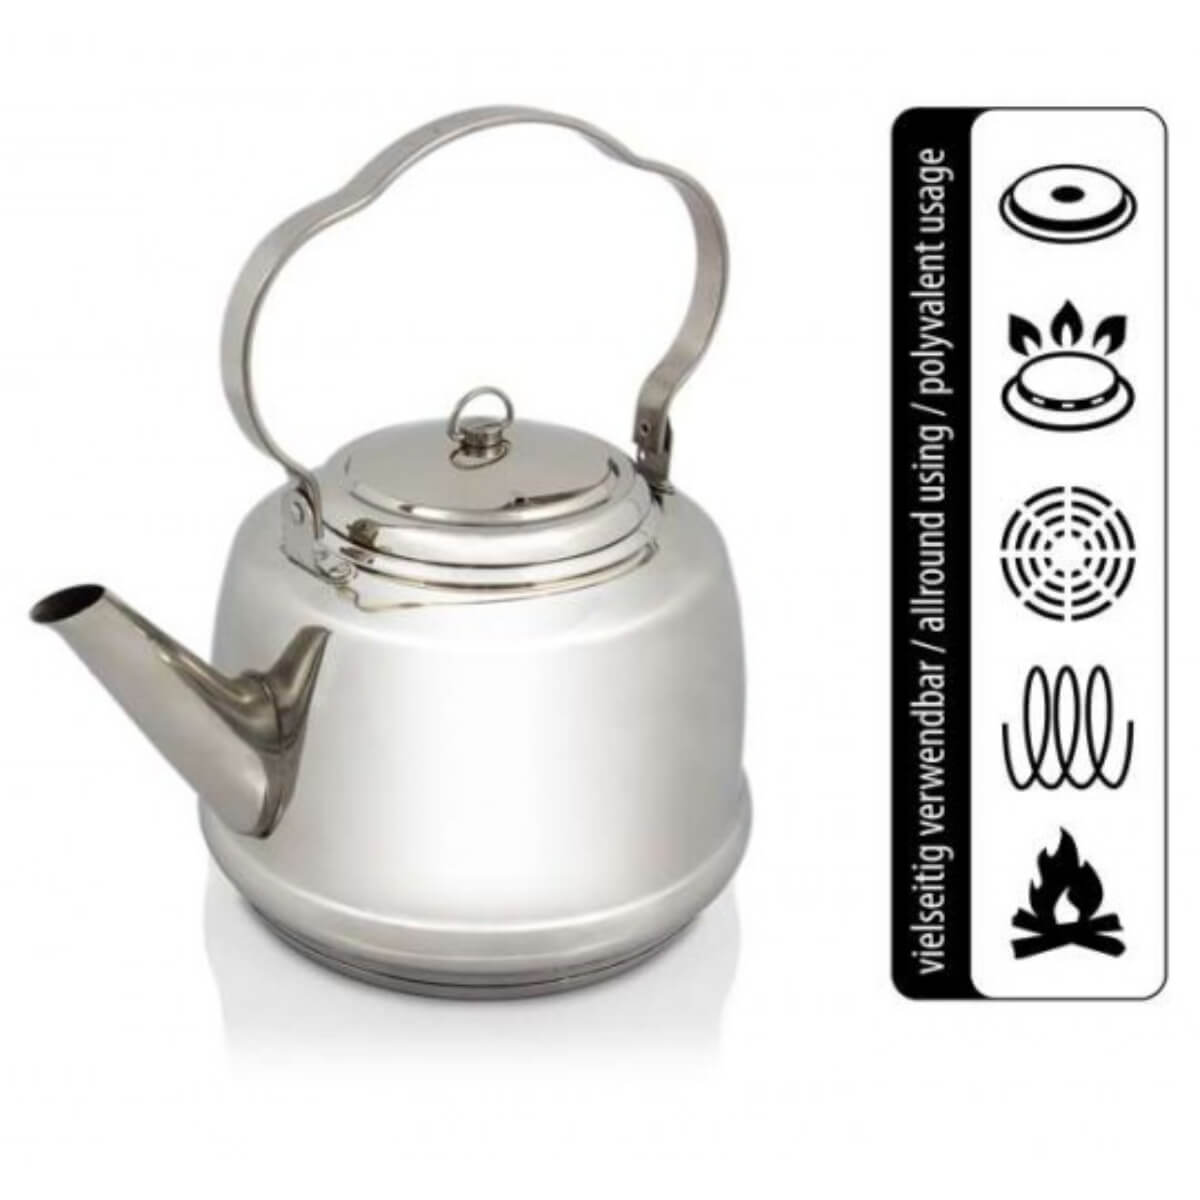 Petromax tk1 Teakettle camp teapot